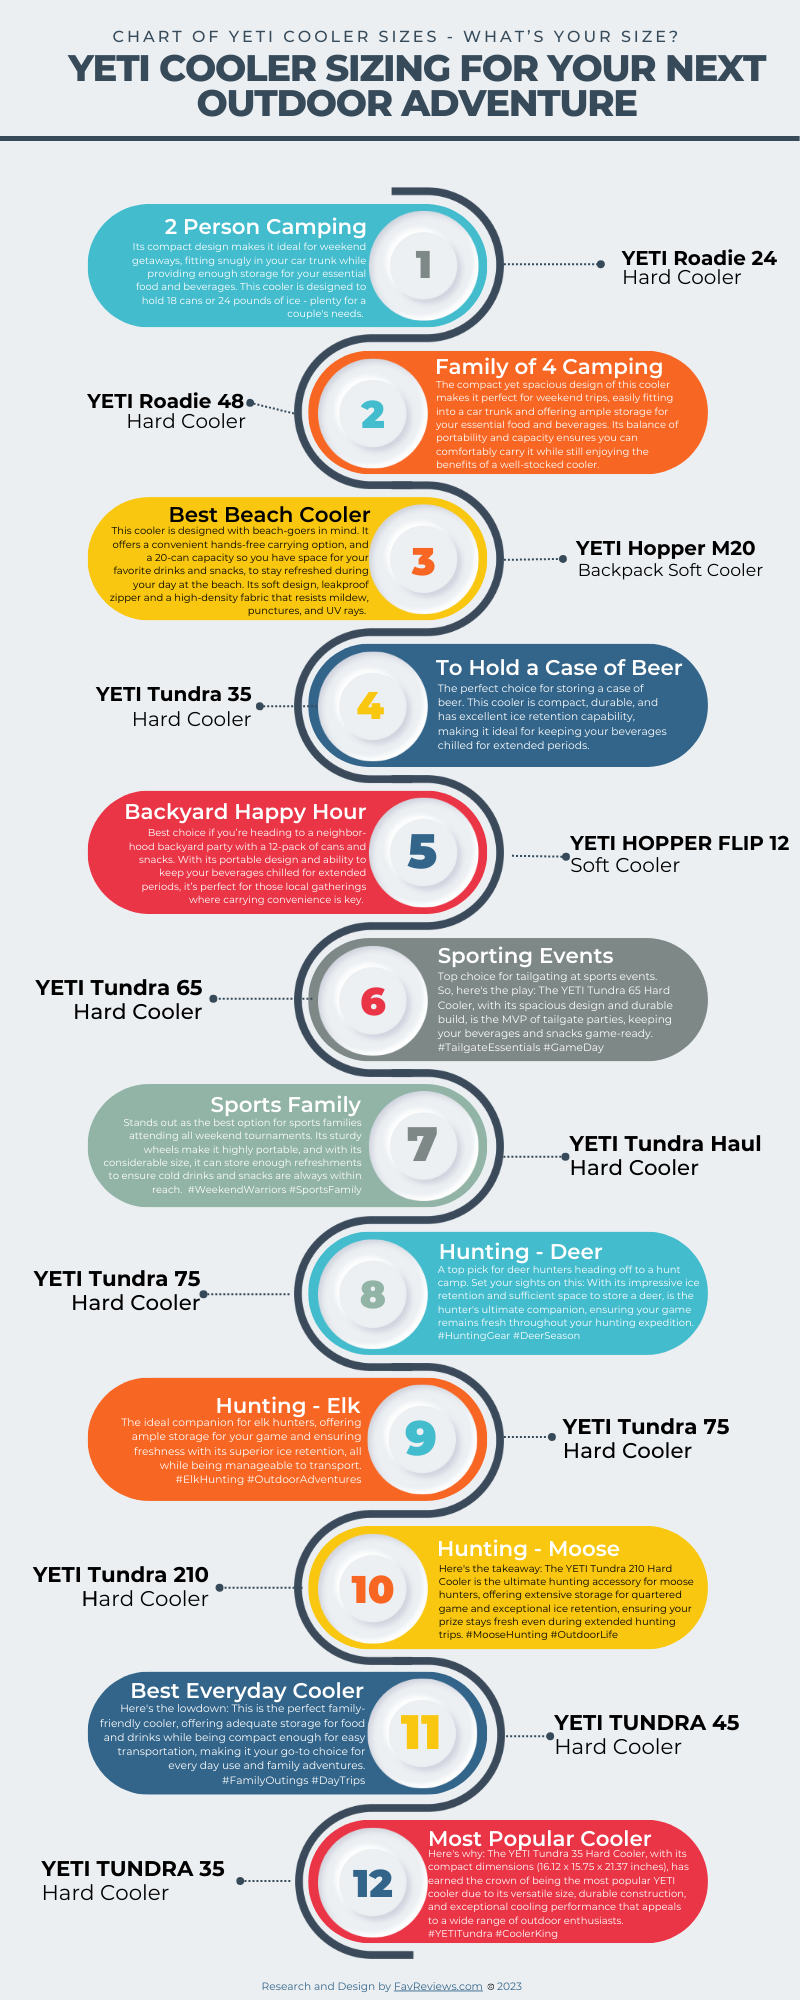 Infographic explaining the best YETI Cooler Sizes based on activity